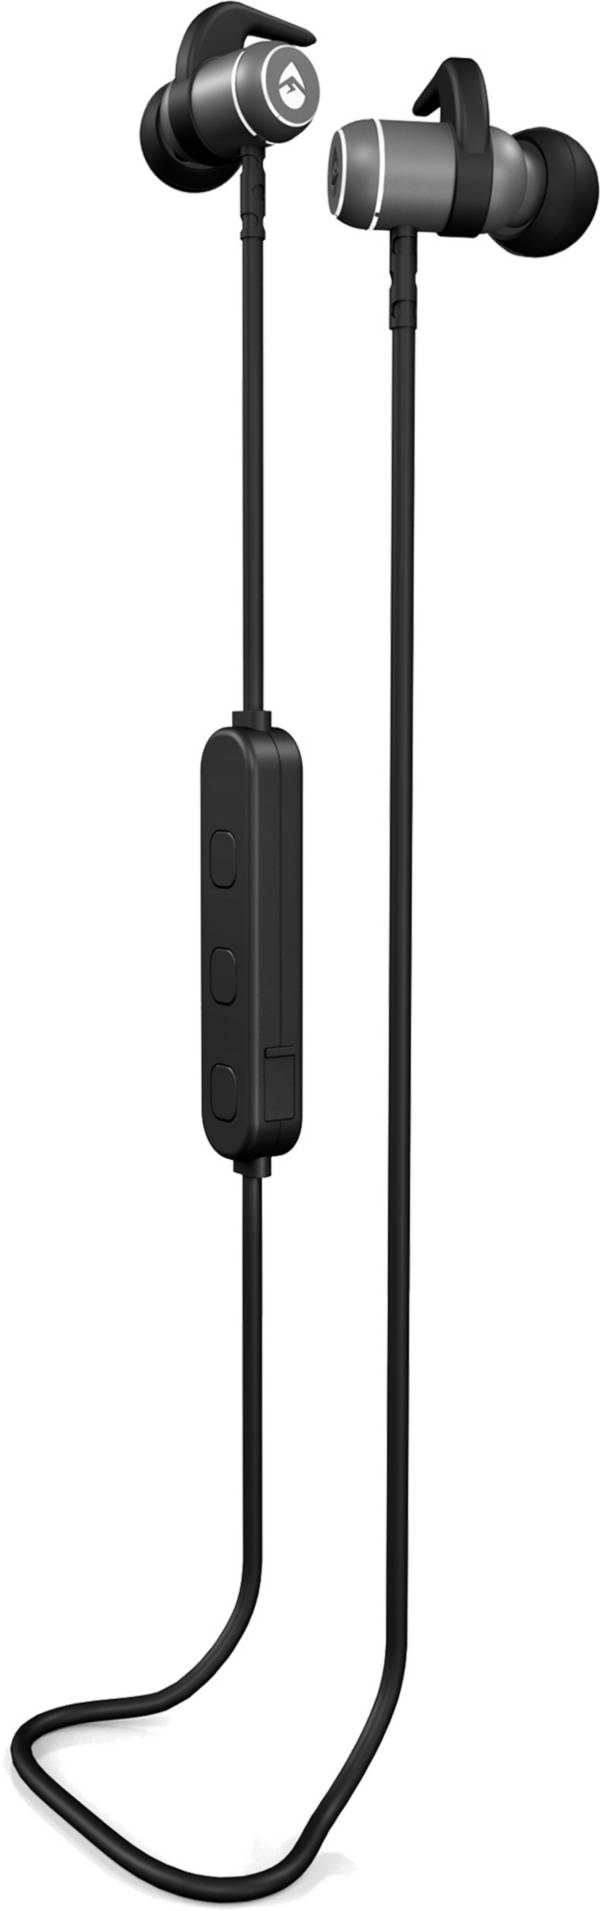 ECOXGEAR Bluetooth SportBuds Earphones product image